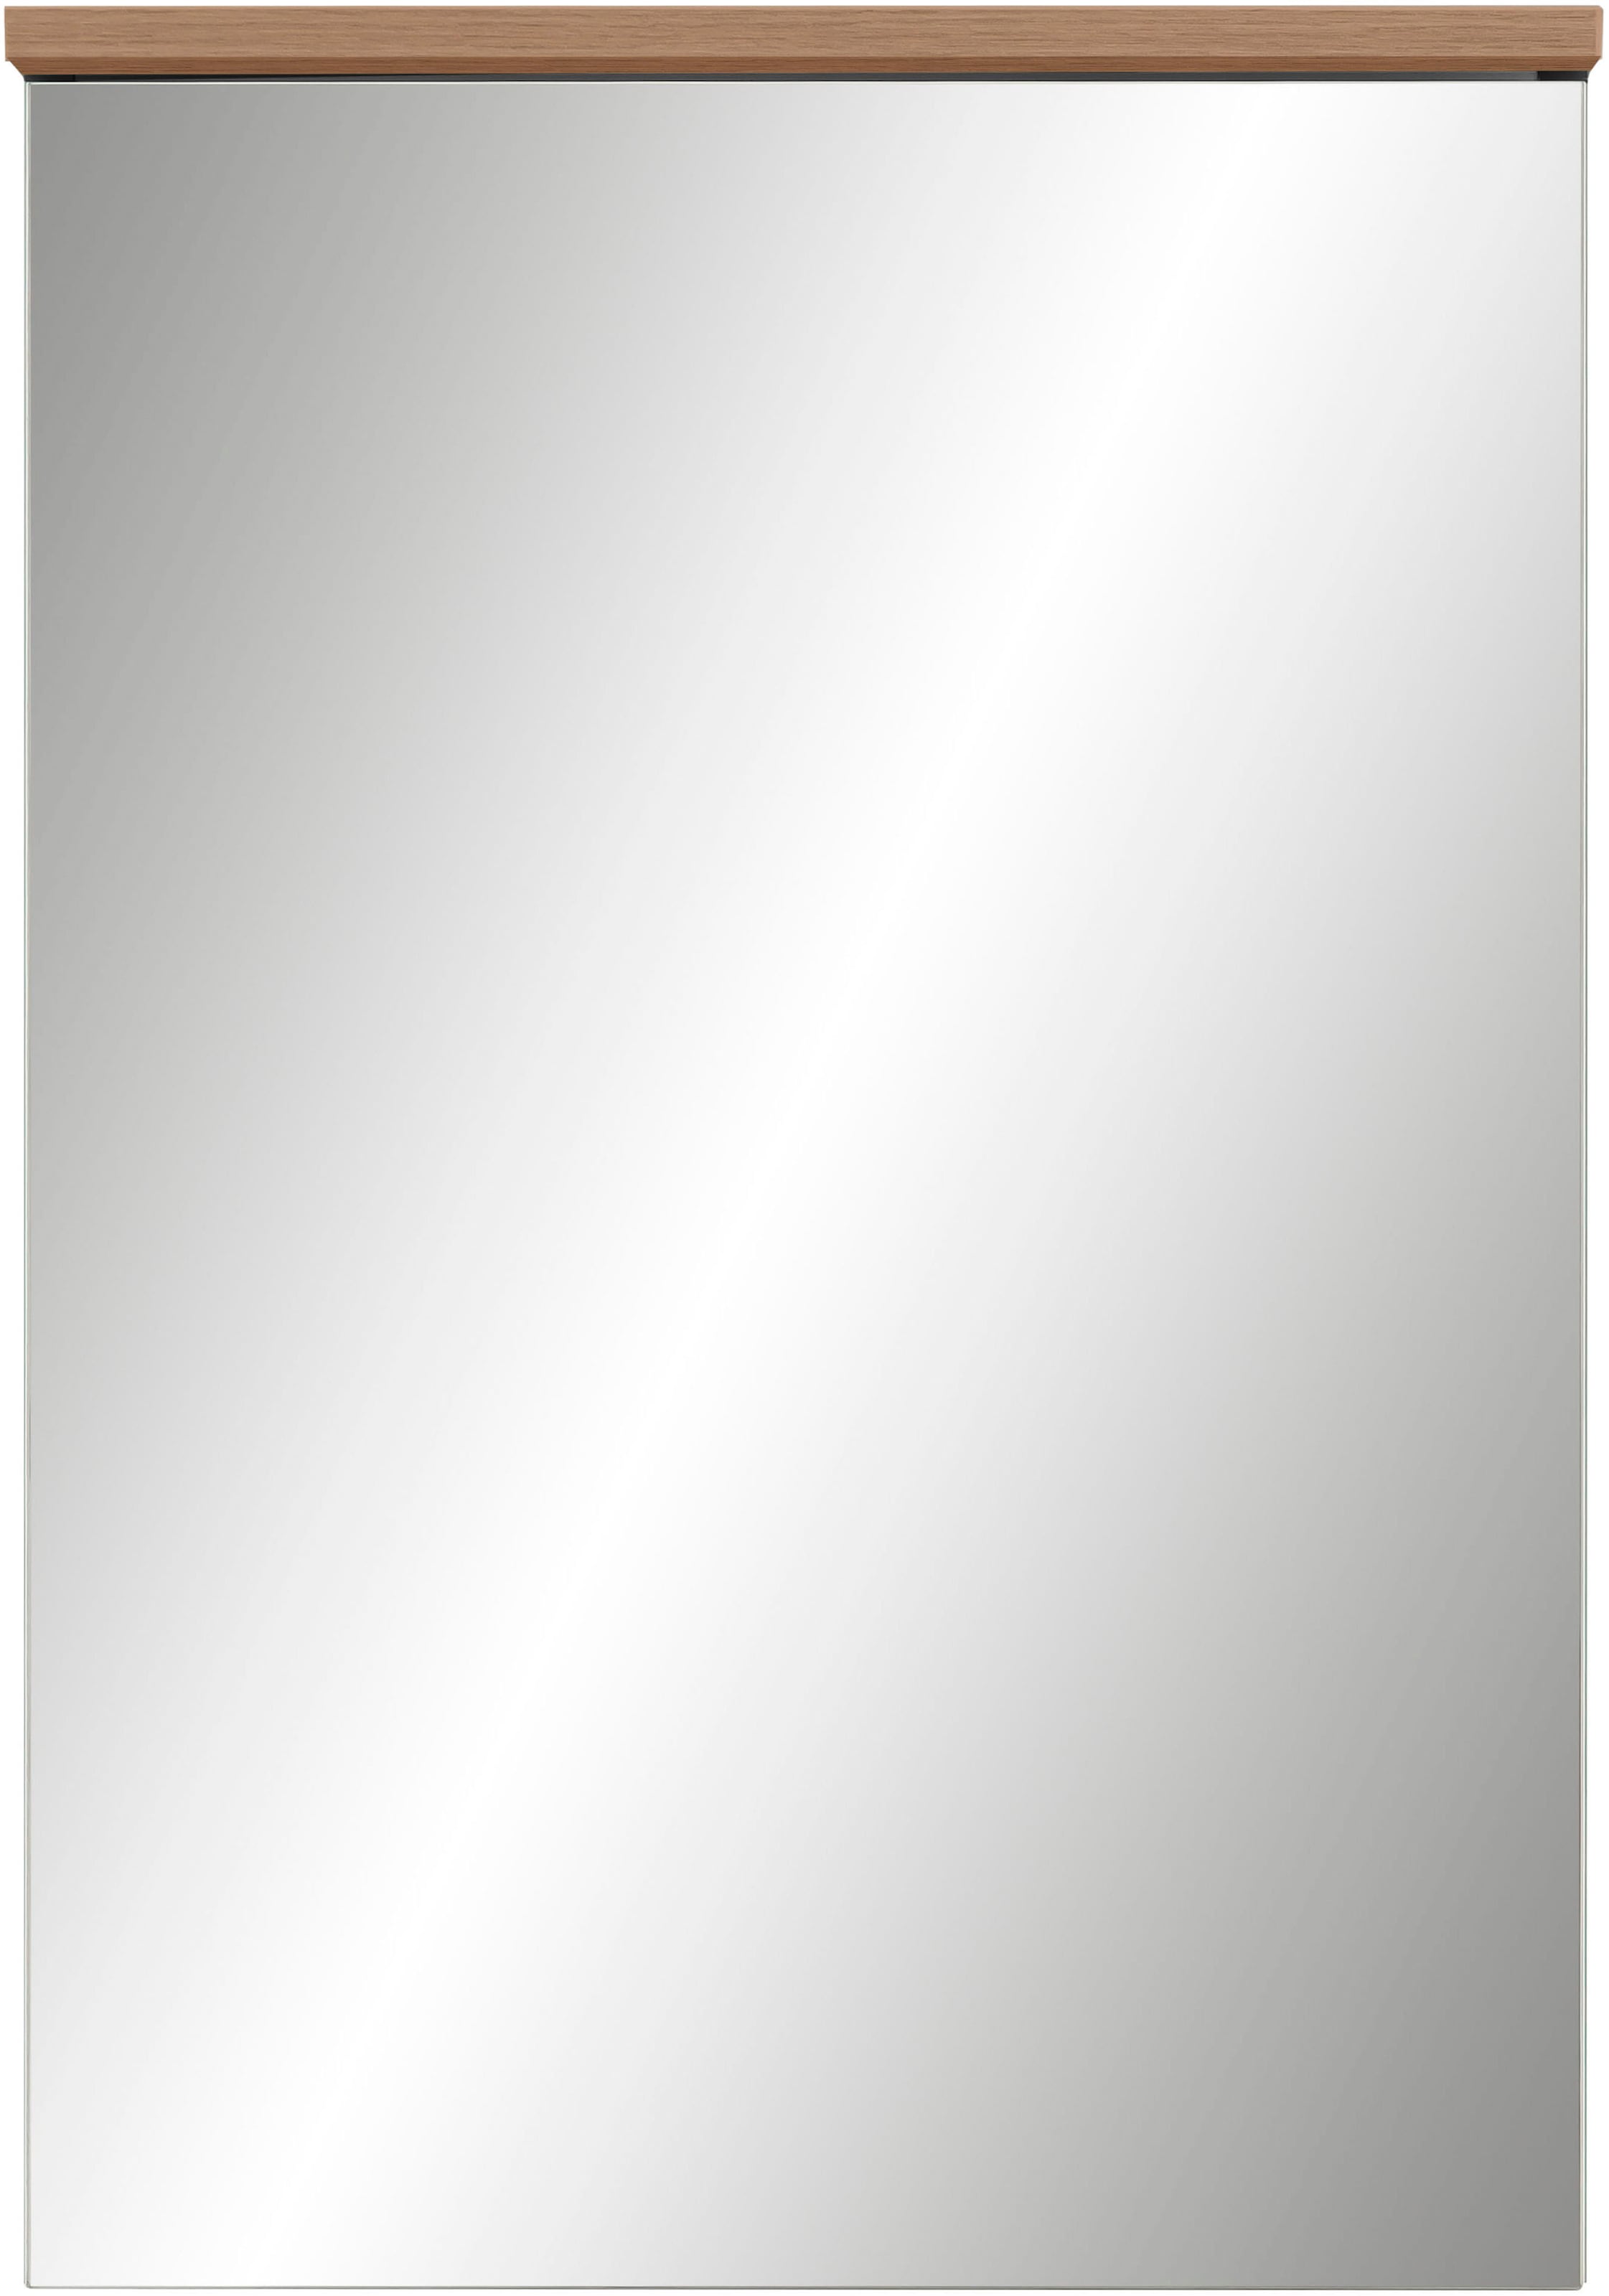 Schildmeyer Badezimmerspiegelschrank »Jesper Breite 50,4 cm«, Mit LED-Beleuchtung und Schalterbox,höhenverstellbare Glaseinlegeböden